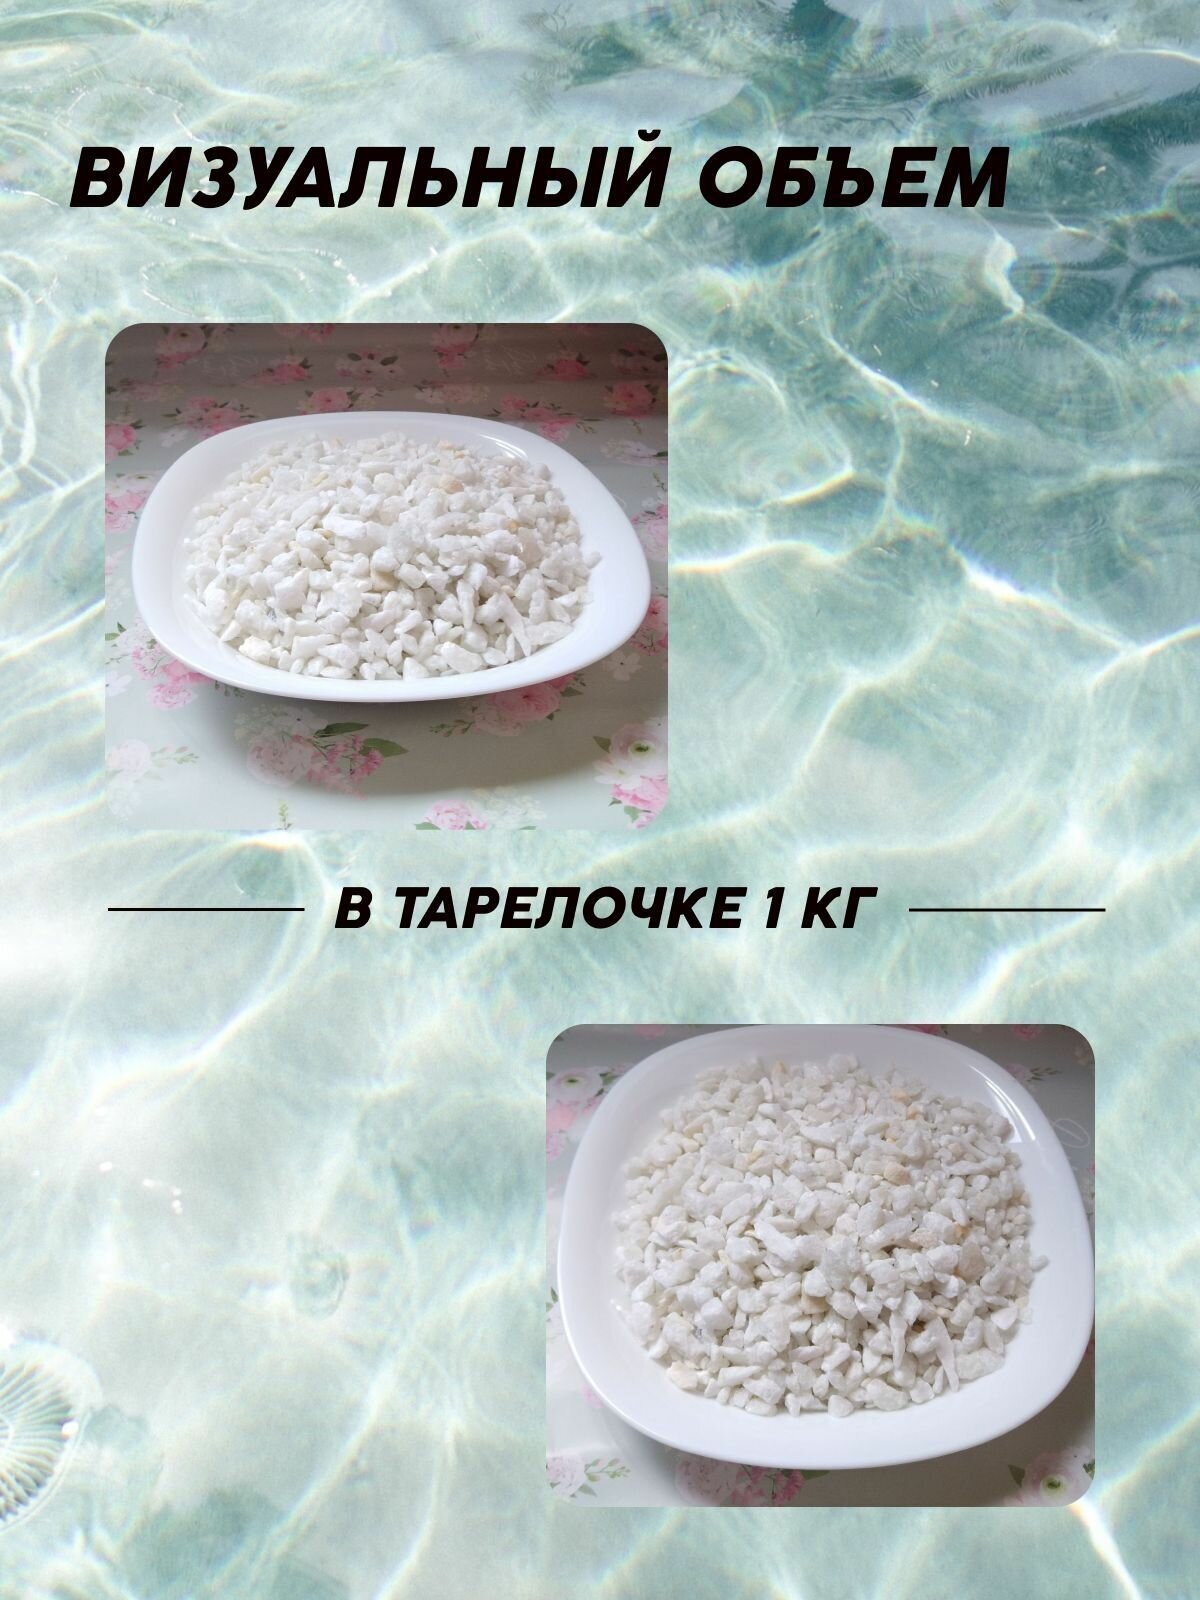 Камень декоративный натуральный/ Мрамор белый колотый 5-10 мм, 1,0 кг/ Грунт для аквариумов/ Декор сада - фотография № 4